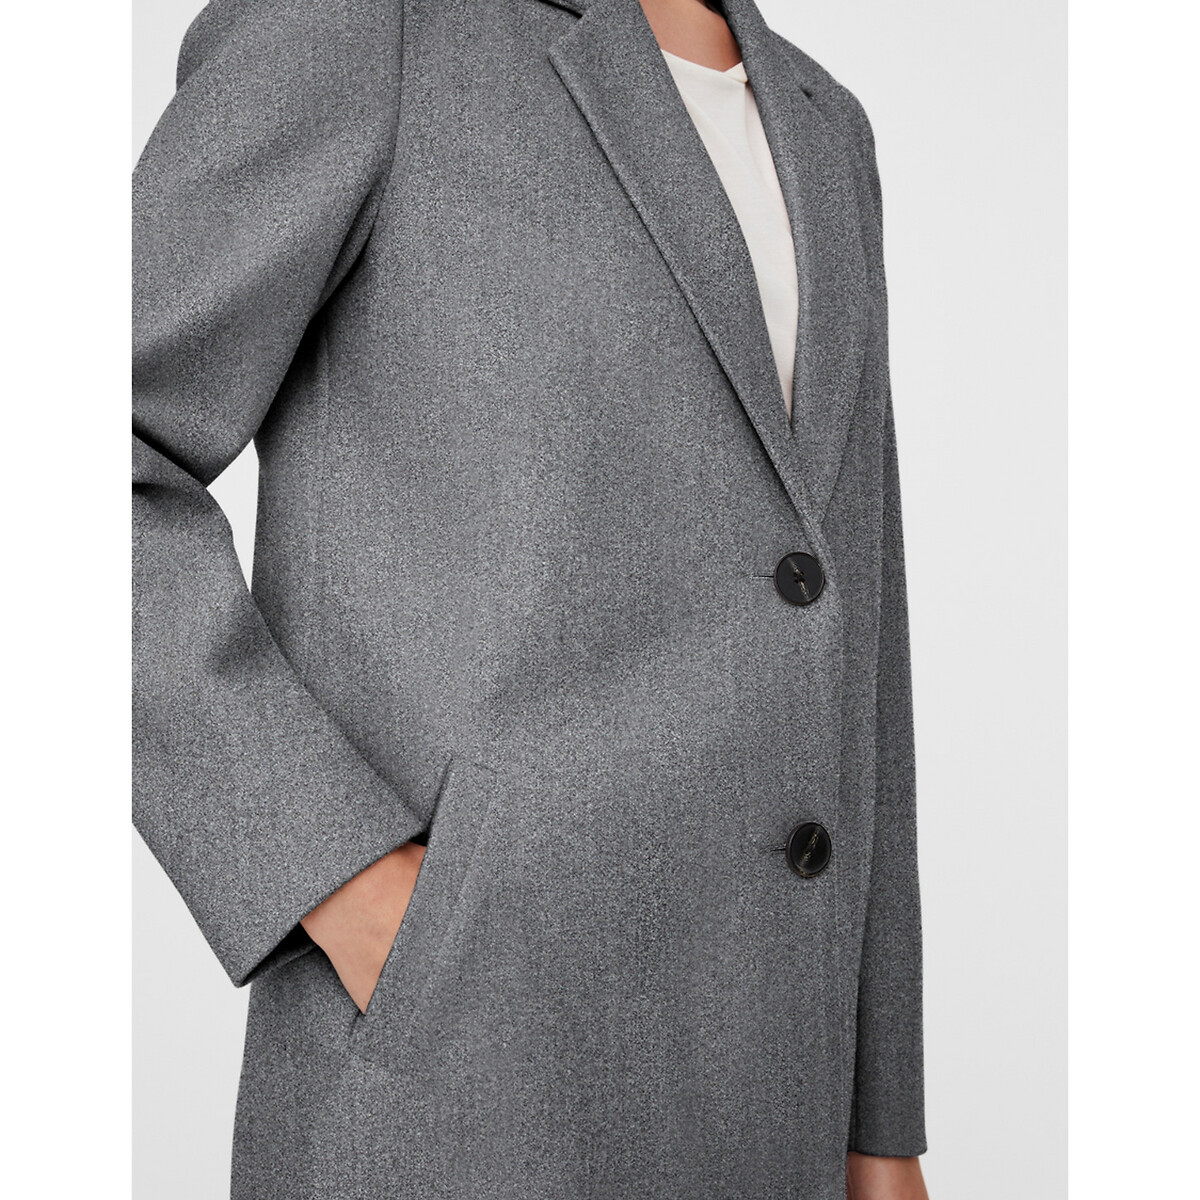 Пальто La Redoute Средней длины на пуговицах M серый, размер M - фото 4